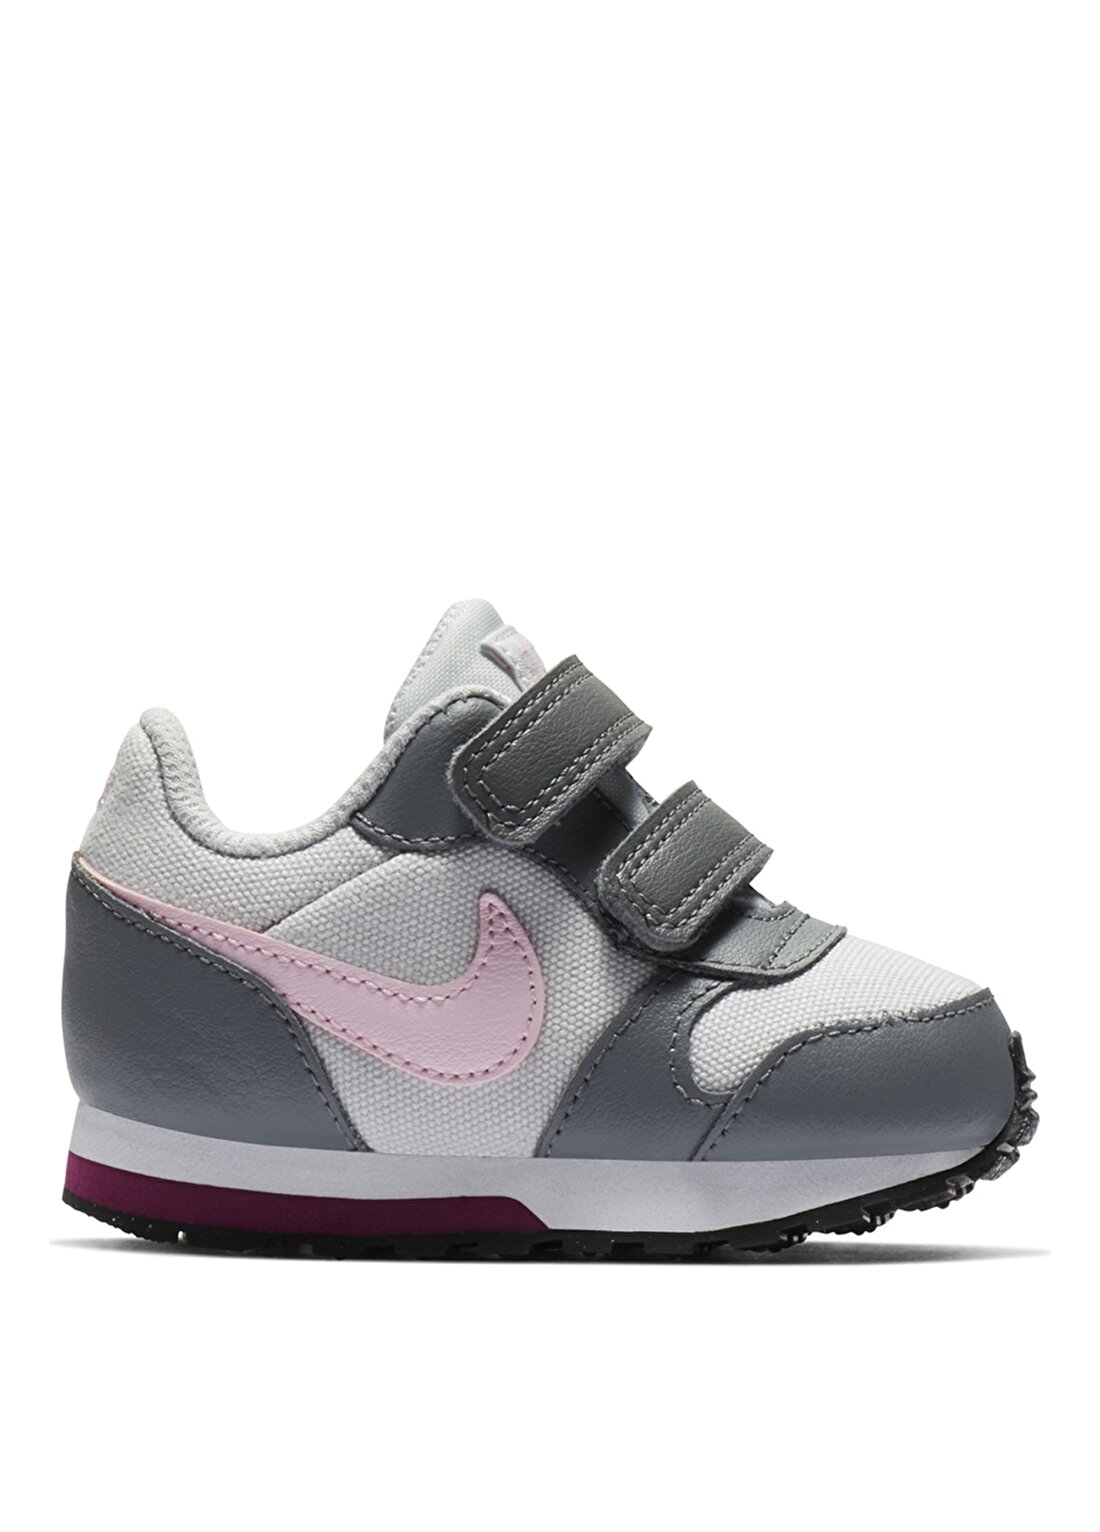 Nike Md Runner 2 (Ps) 807320-017 Yürüyüş Ayakkabısı